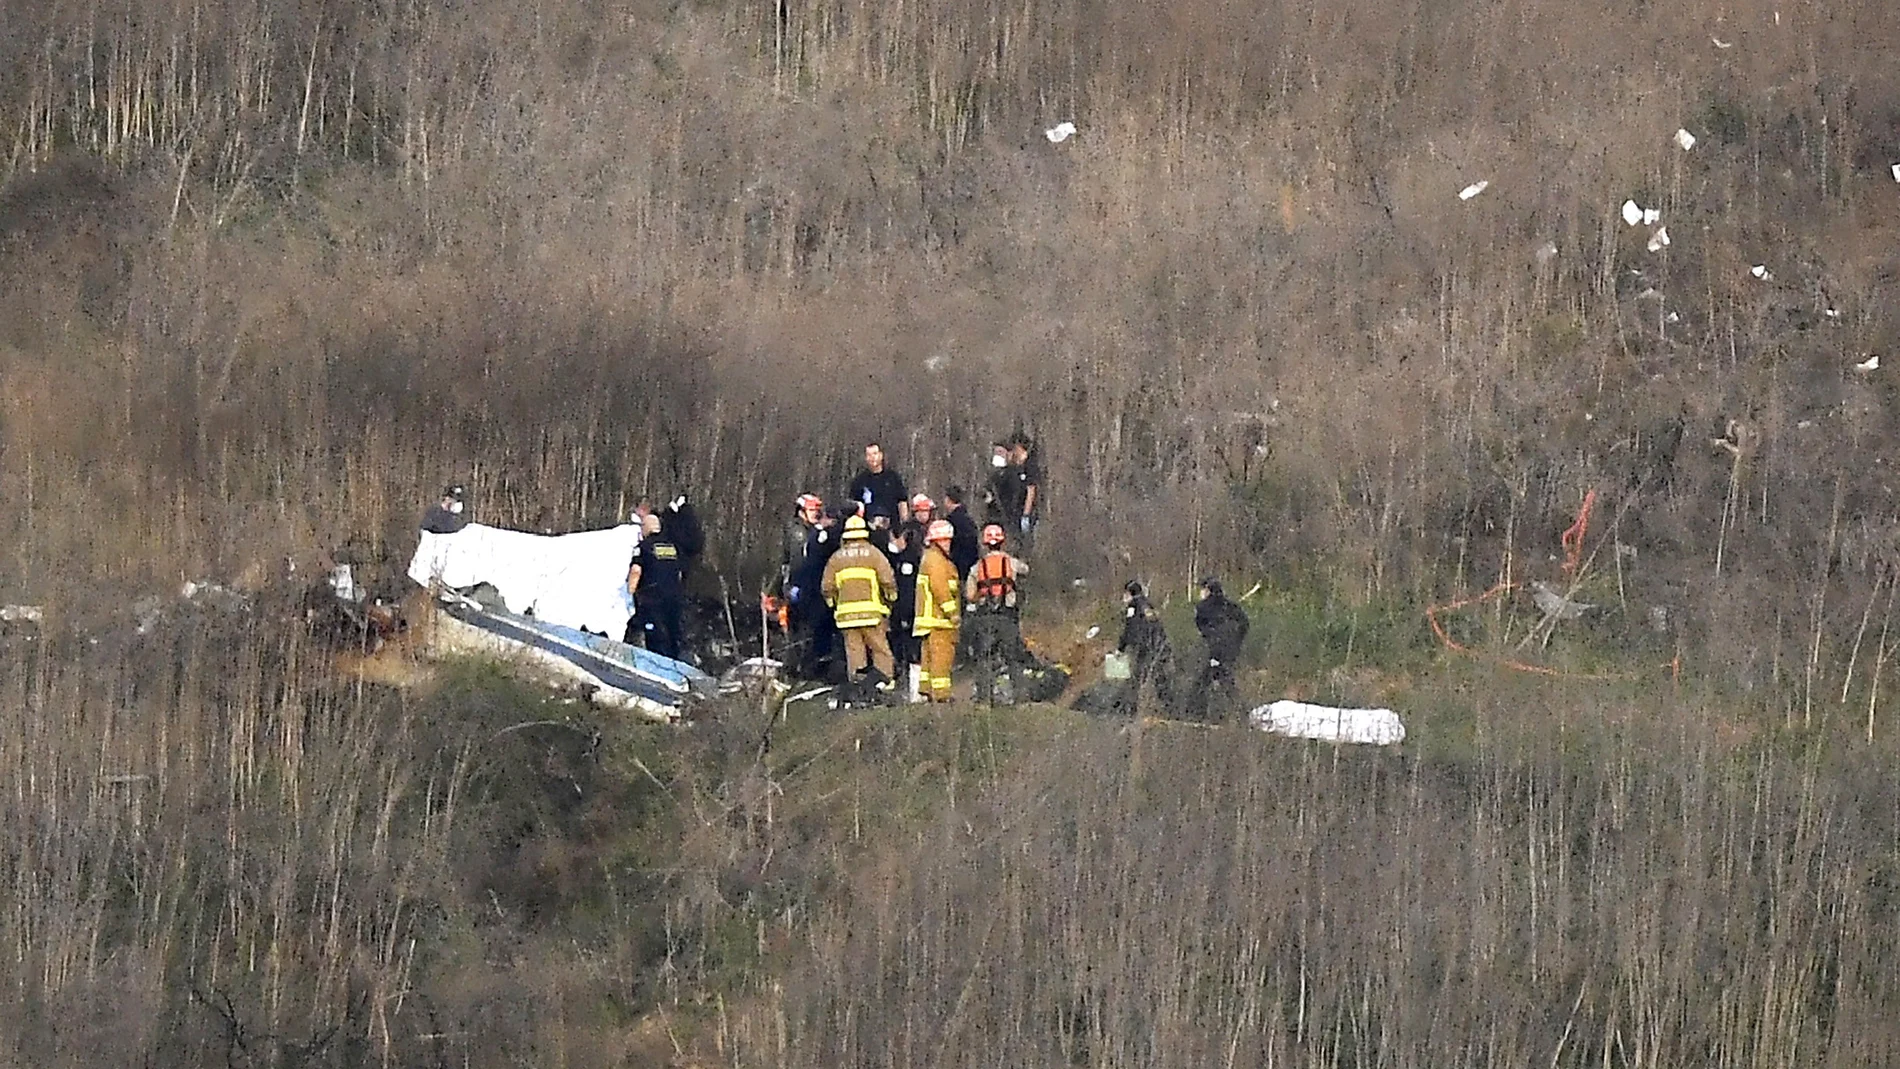 Escena del accidente del helicóptero que costó la vida a Kobe Bryant, su hija Gianna y a otras siete personas.